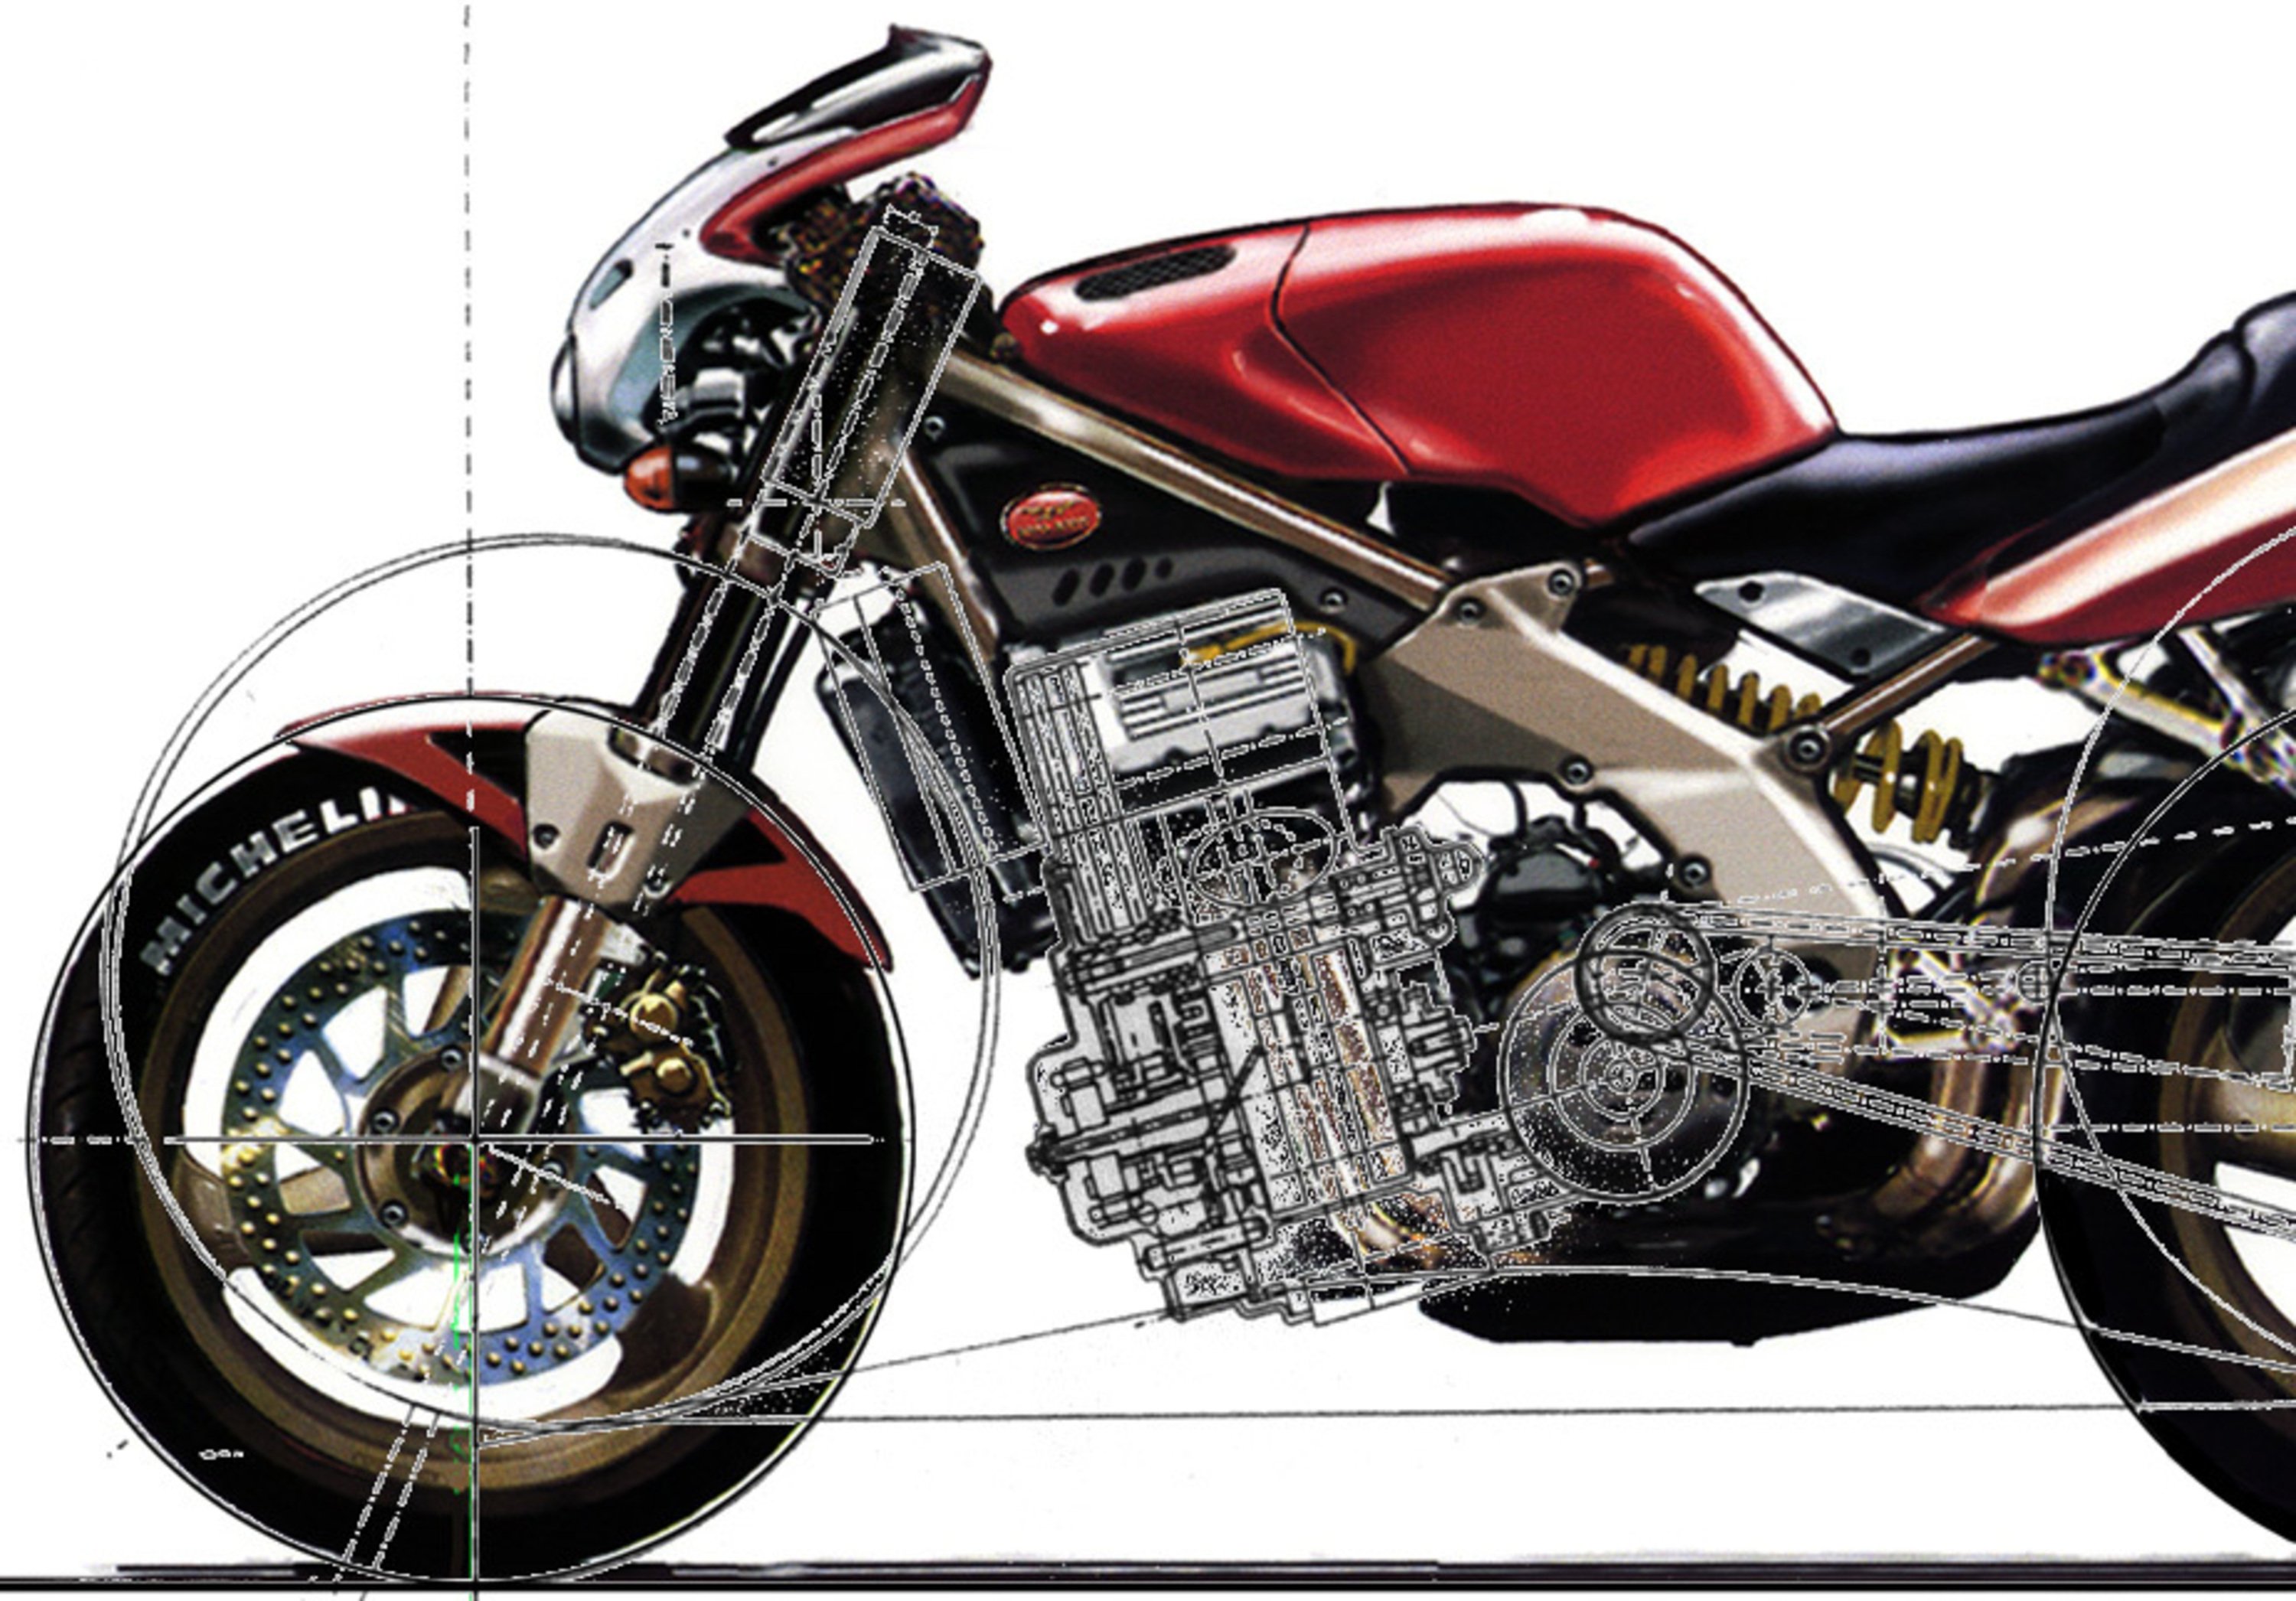 Moto Guzzi  VA-10: il motore che avrebbe potuto cambiare il futuro a Mandello